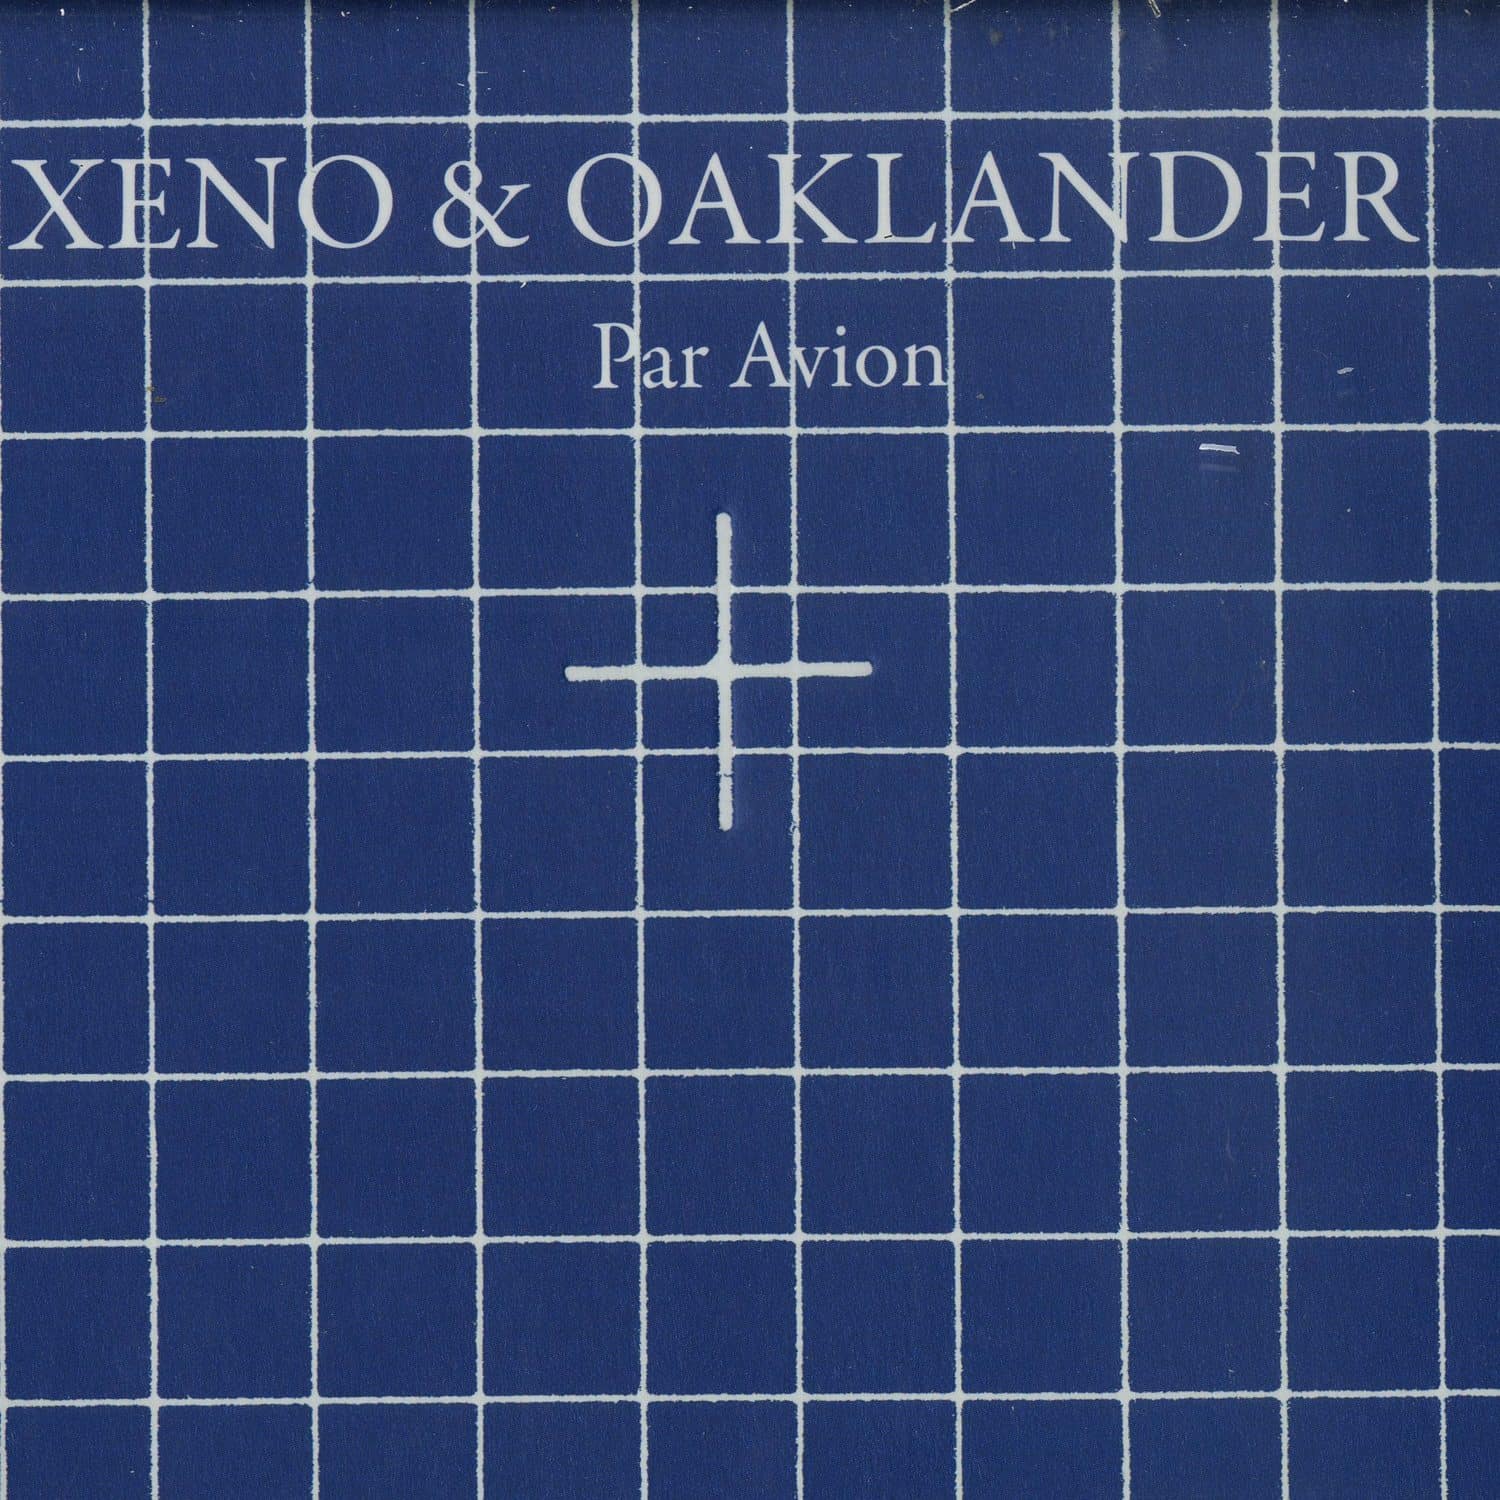 Xeno & Oaklander - PAR AVION 